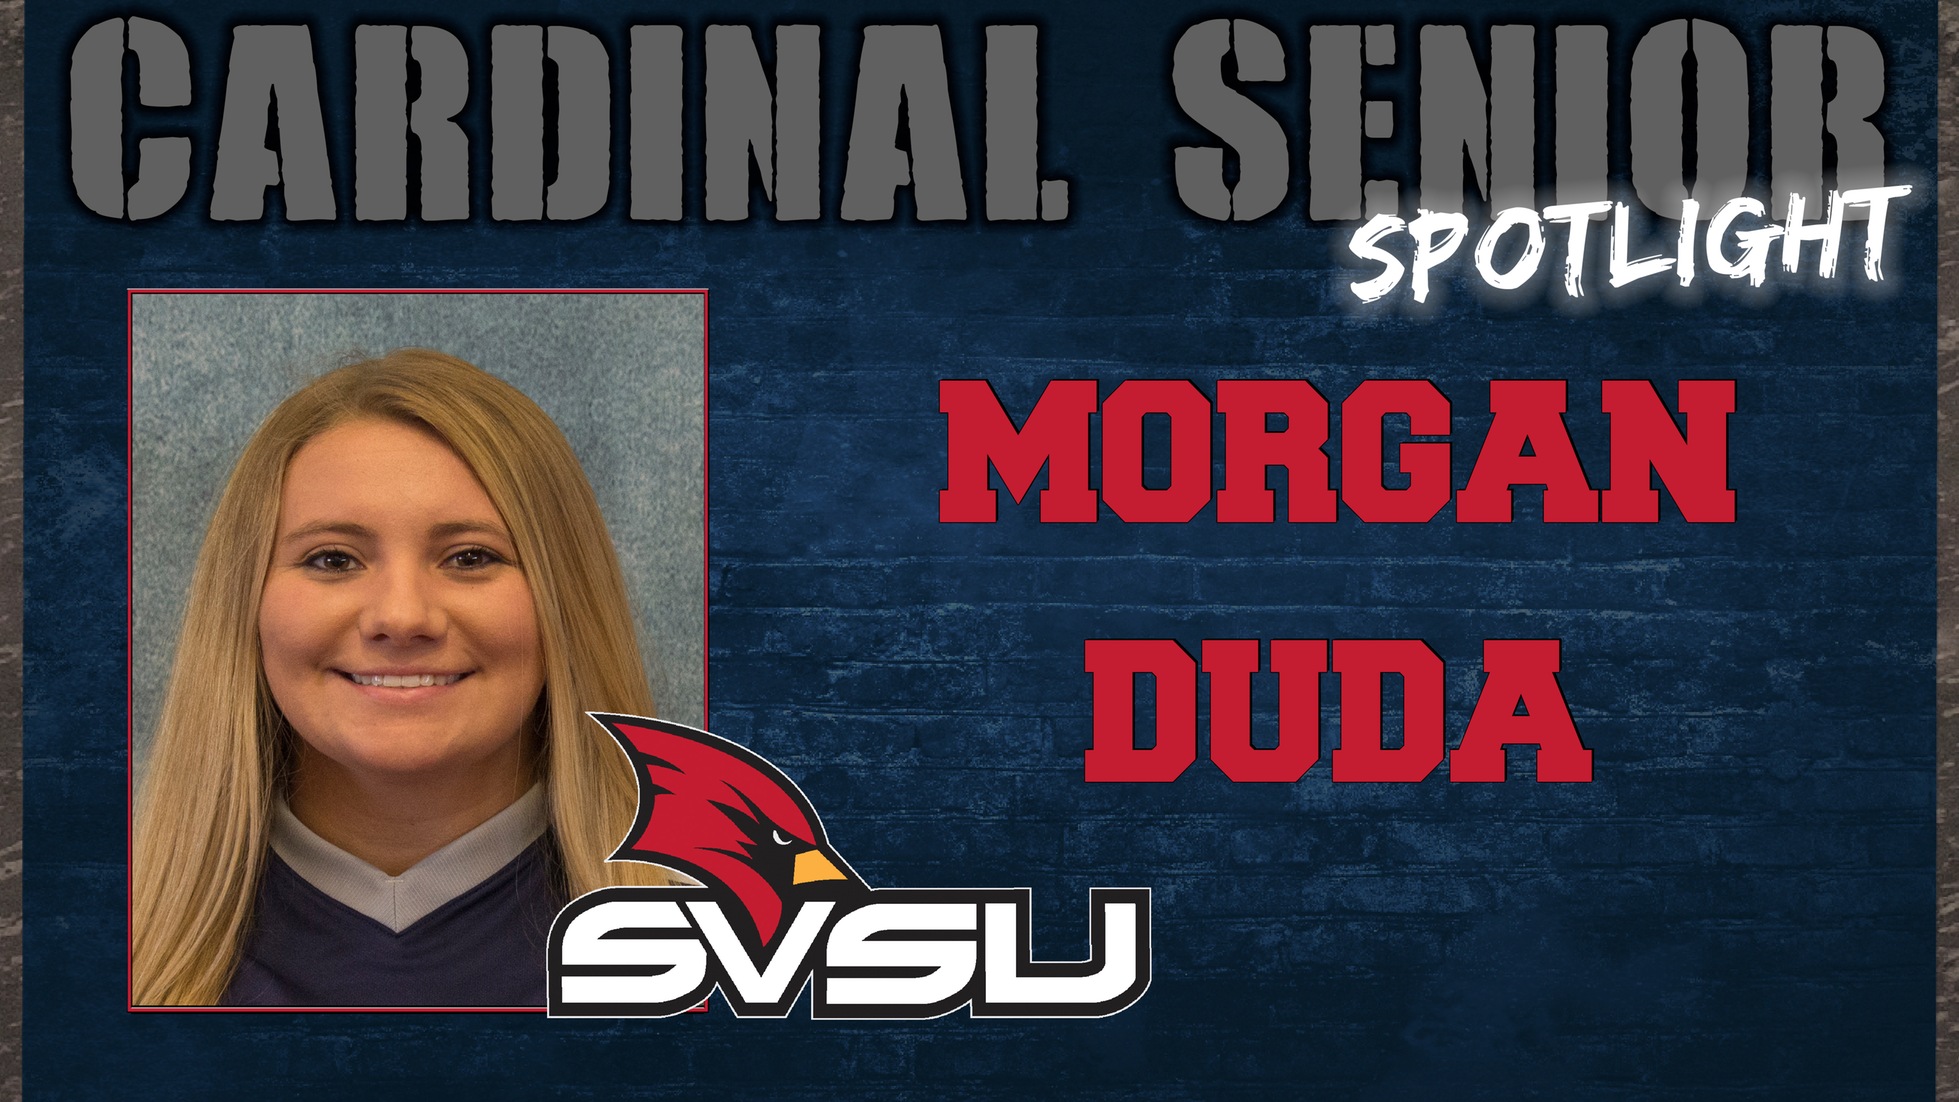 SVSU Cardinal Senior Spotlight - Morgan Duda